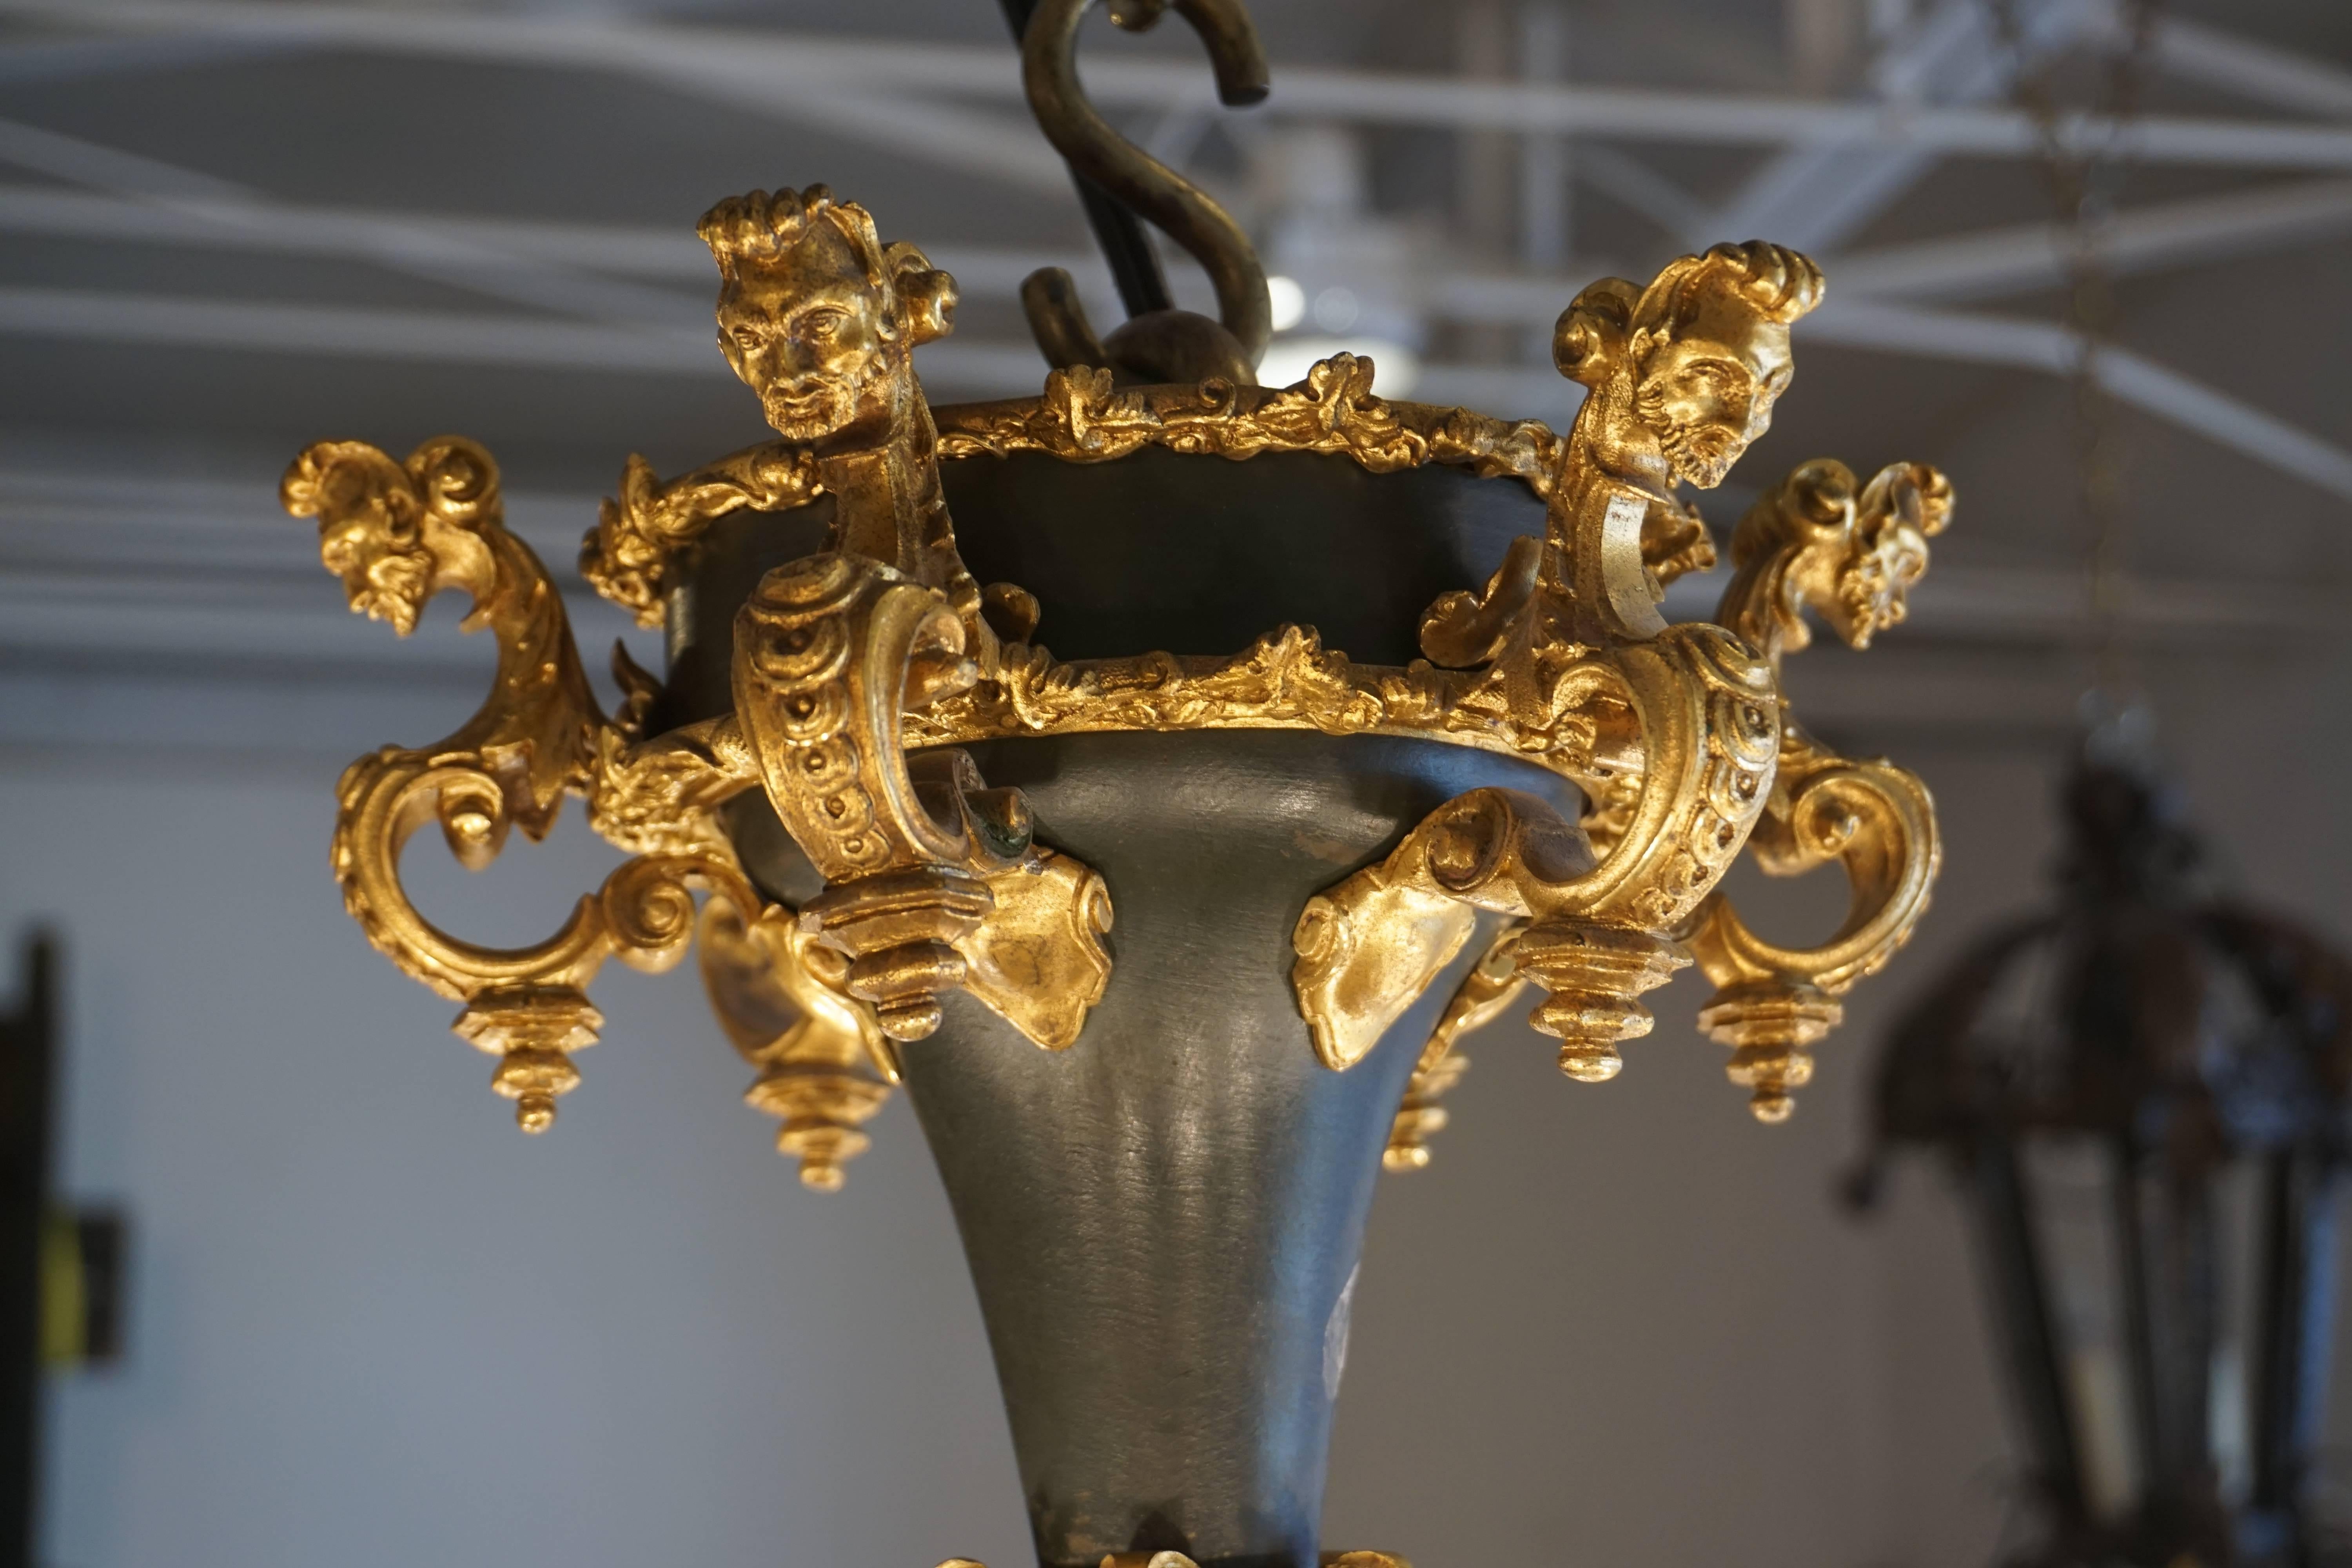 Der zwölfflammige Barockkronleuchter ist in Bronze, vergoldet und dunkelbronzefarben gehalten und mit süßen Puttengesichtern versehen. Es ist eine hübsche Leuchte mit viel Charakter, komplizierten Schnitzereien und reich an Farben. Eine wunderbare